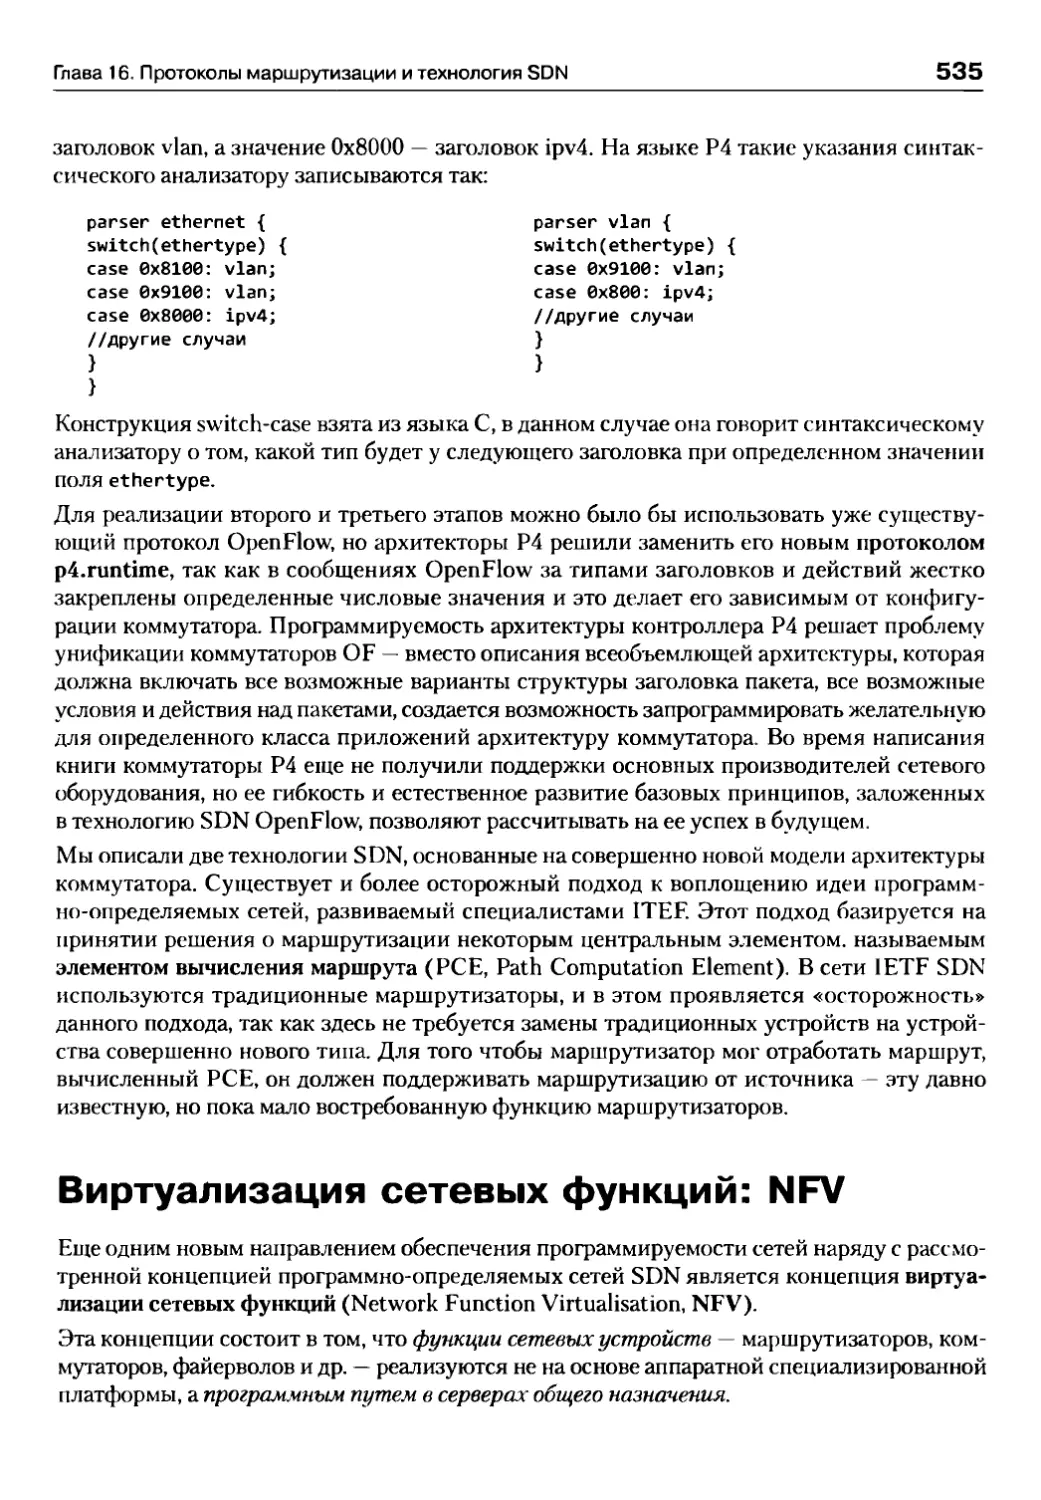 Виртуализация сетевых функций: NFV